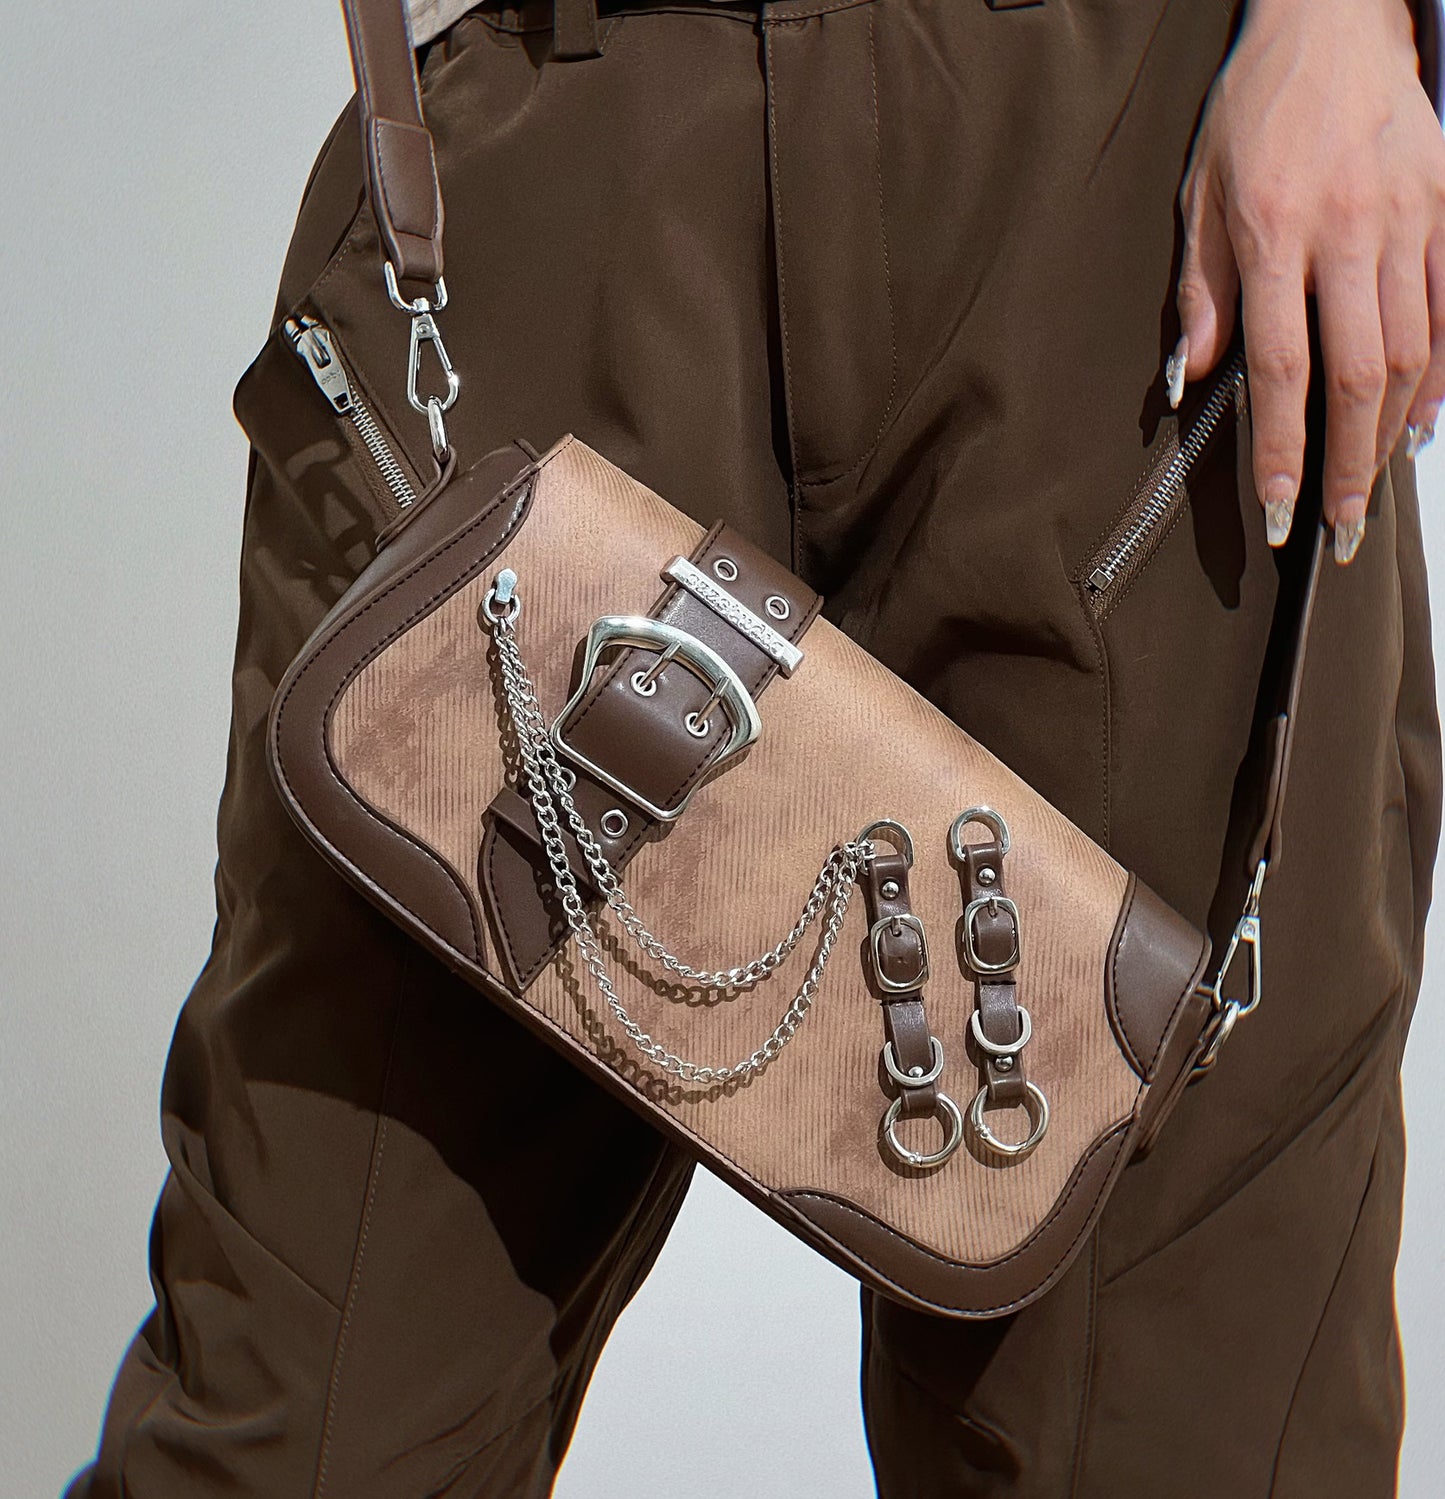 Retro Grunge Industrial Brown Leather Strap Shoulder Bag